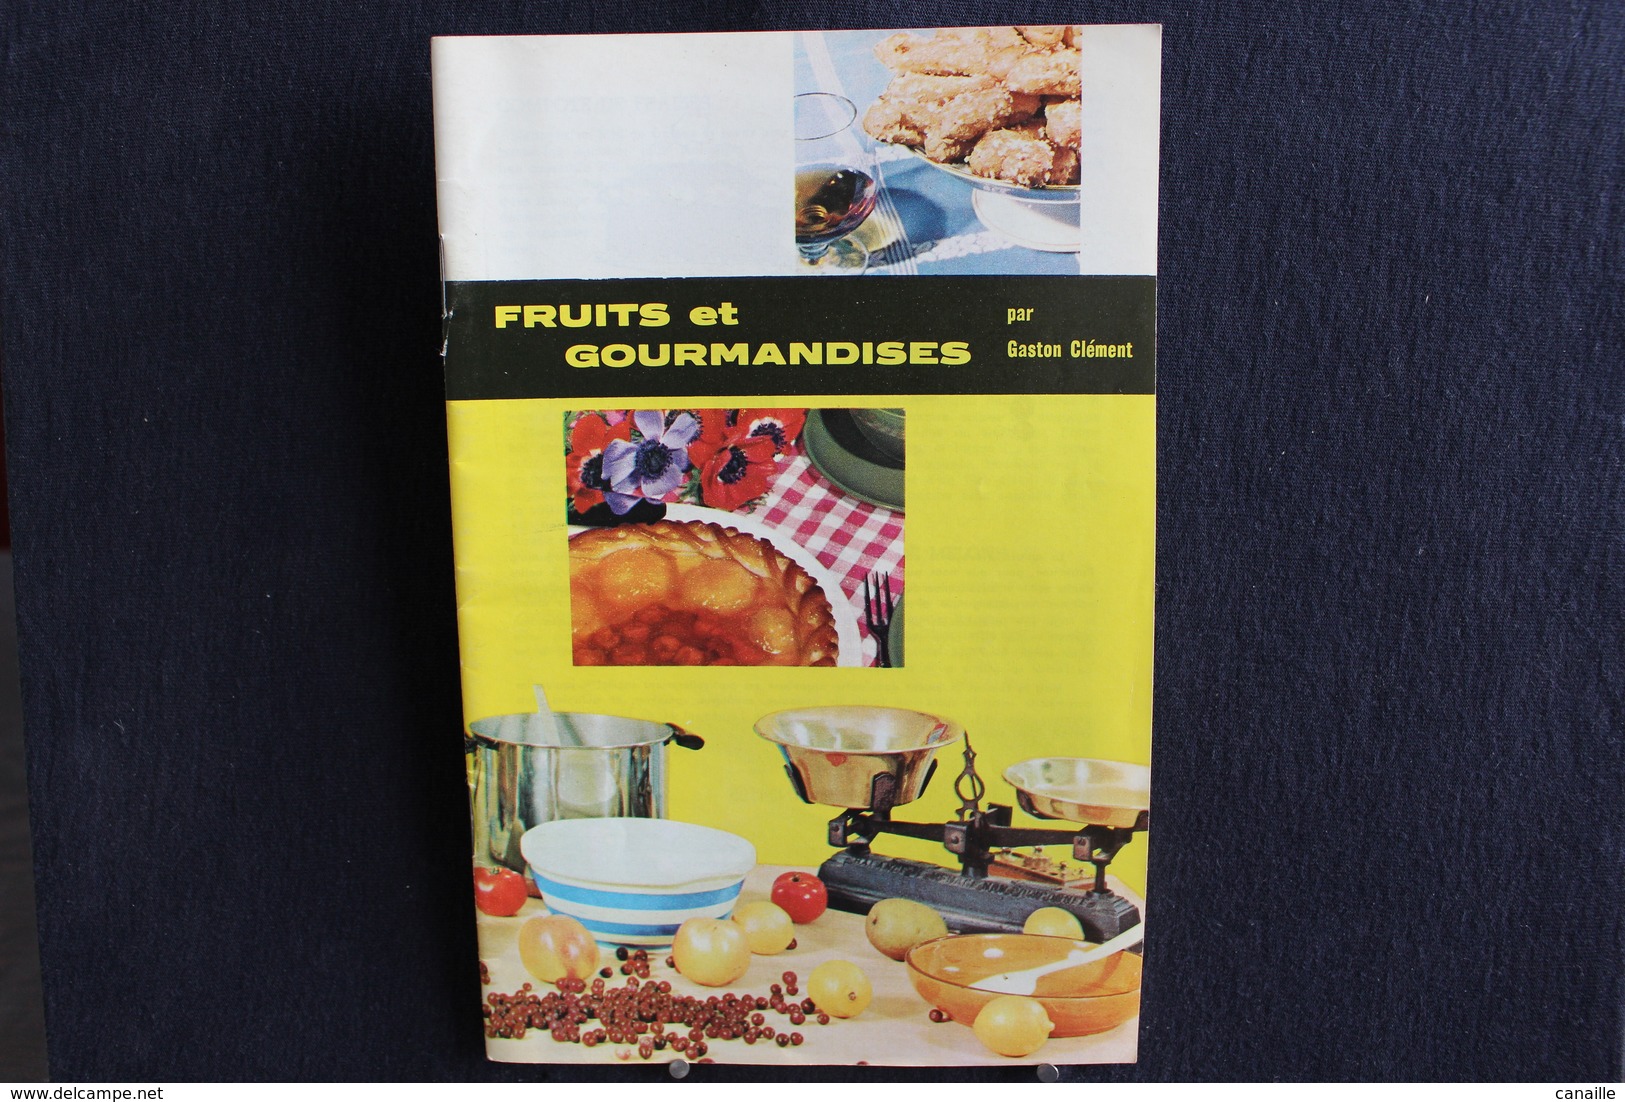 Publicités ( 5 )  - Livret De Cuisine - Par Gaston Clément - Fruits Et Gourmandises  -  Forma 13x20 Cm 15 Page - Cuisine & Vins